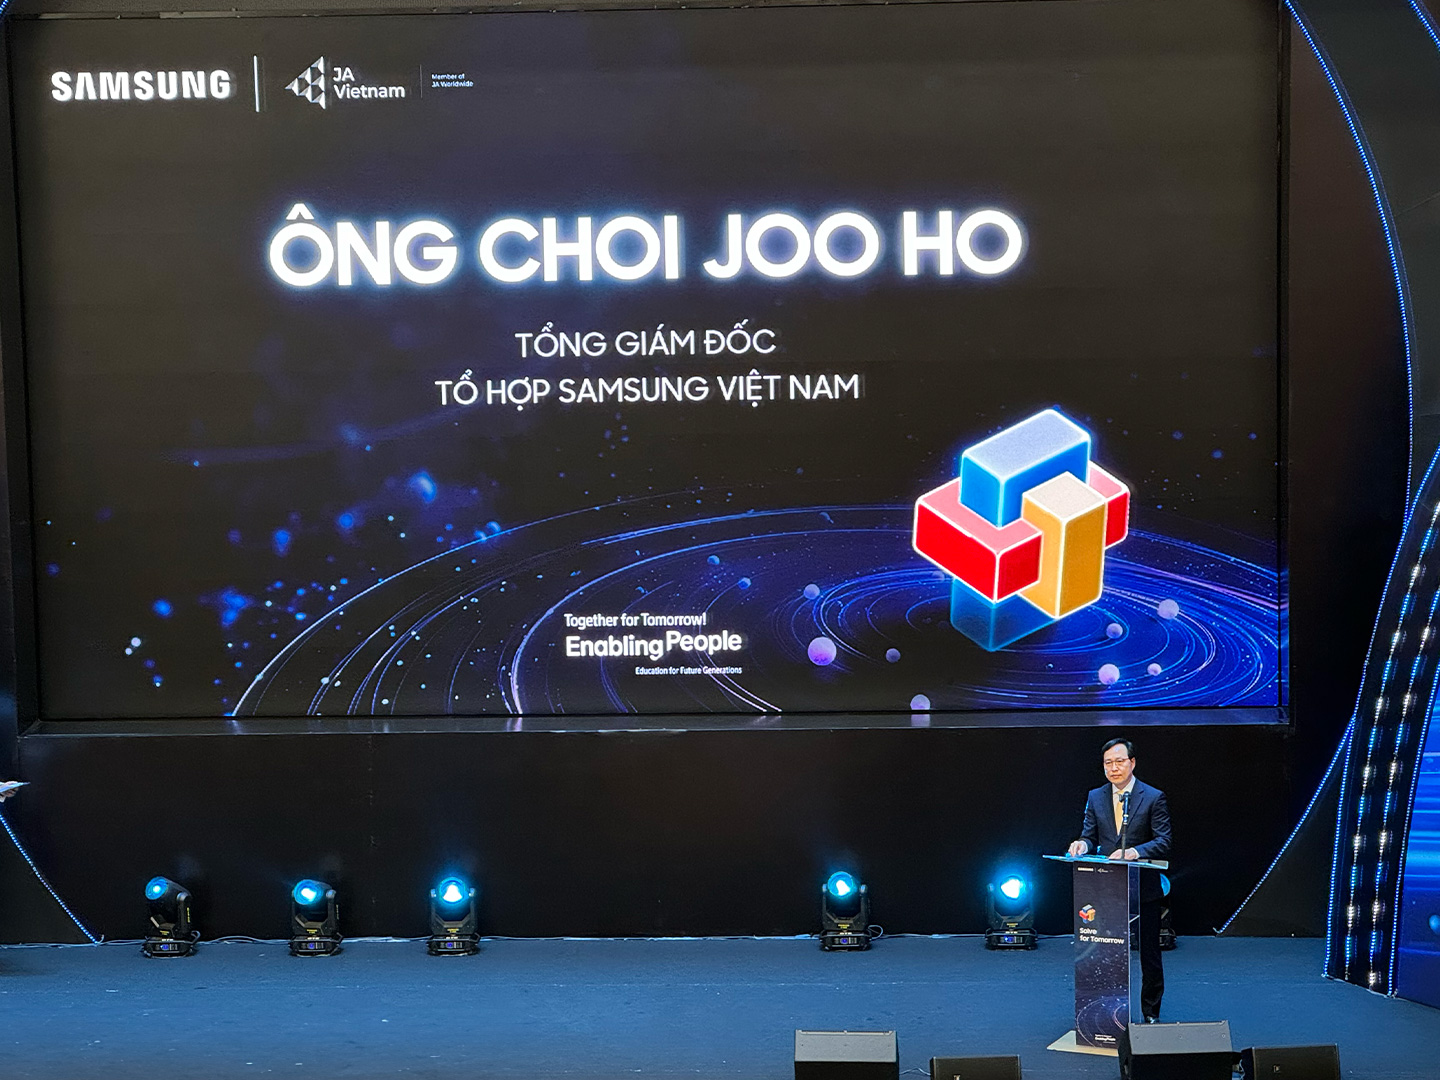 Ông Choi Joo Ho, Tổng Giám đốc Samsung Việt Nam (Ảnh: Internet)